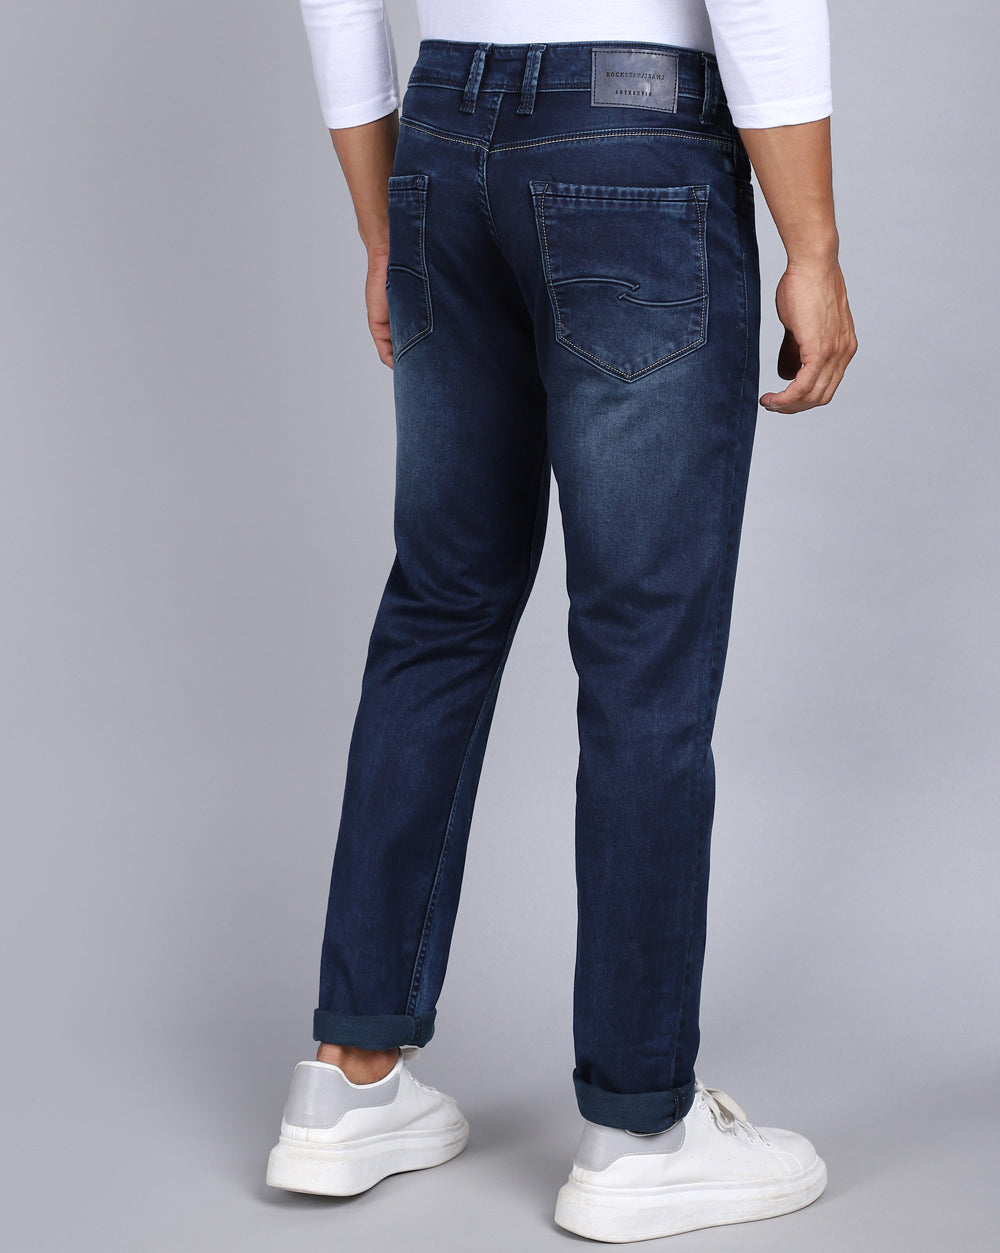 Shop Trendy Dark Indigo Tailored Jeans Online In India – Rockstar Jeans